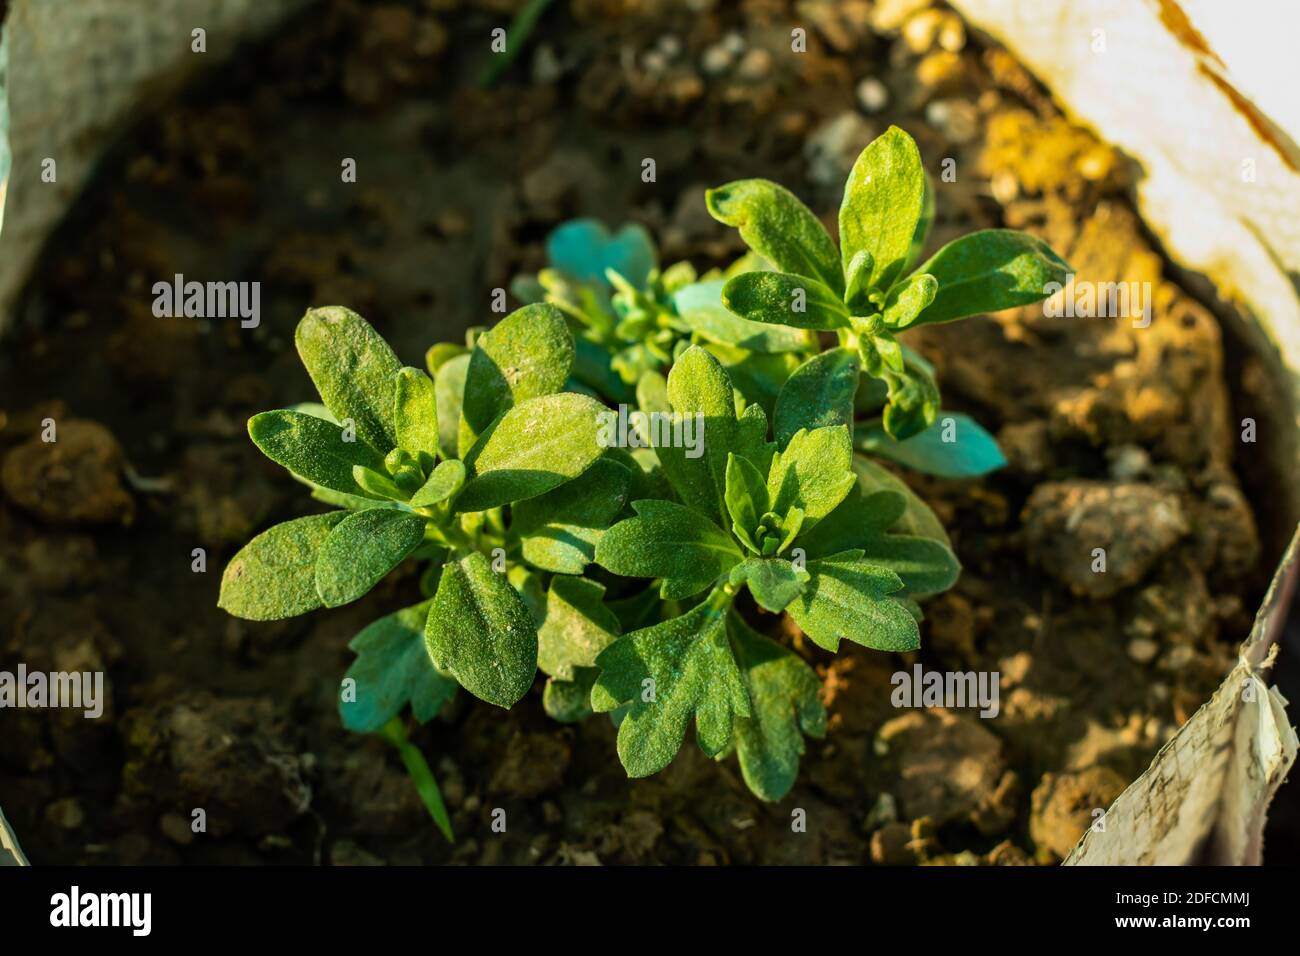 White-Leaf Rock-Rose Sämling Pflanze auf Plastiktüten in das Haus Garten  Stockfotografie - Alamy